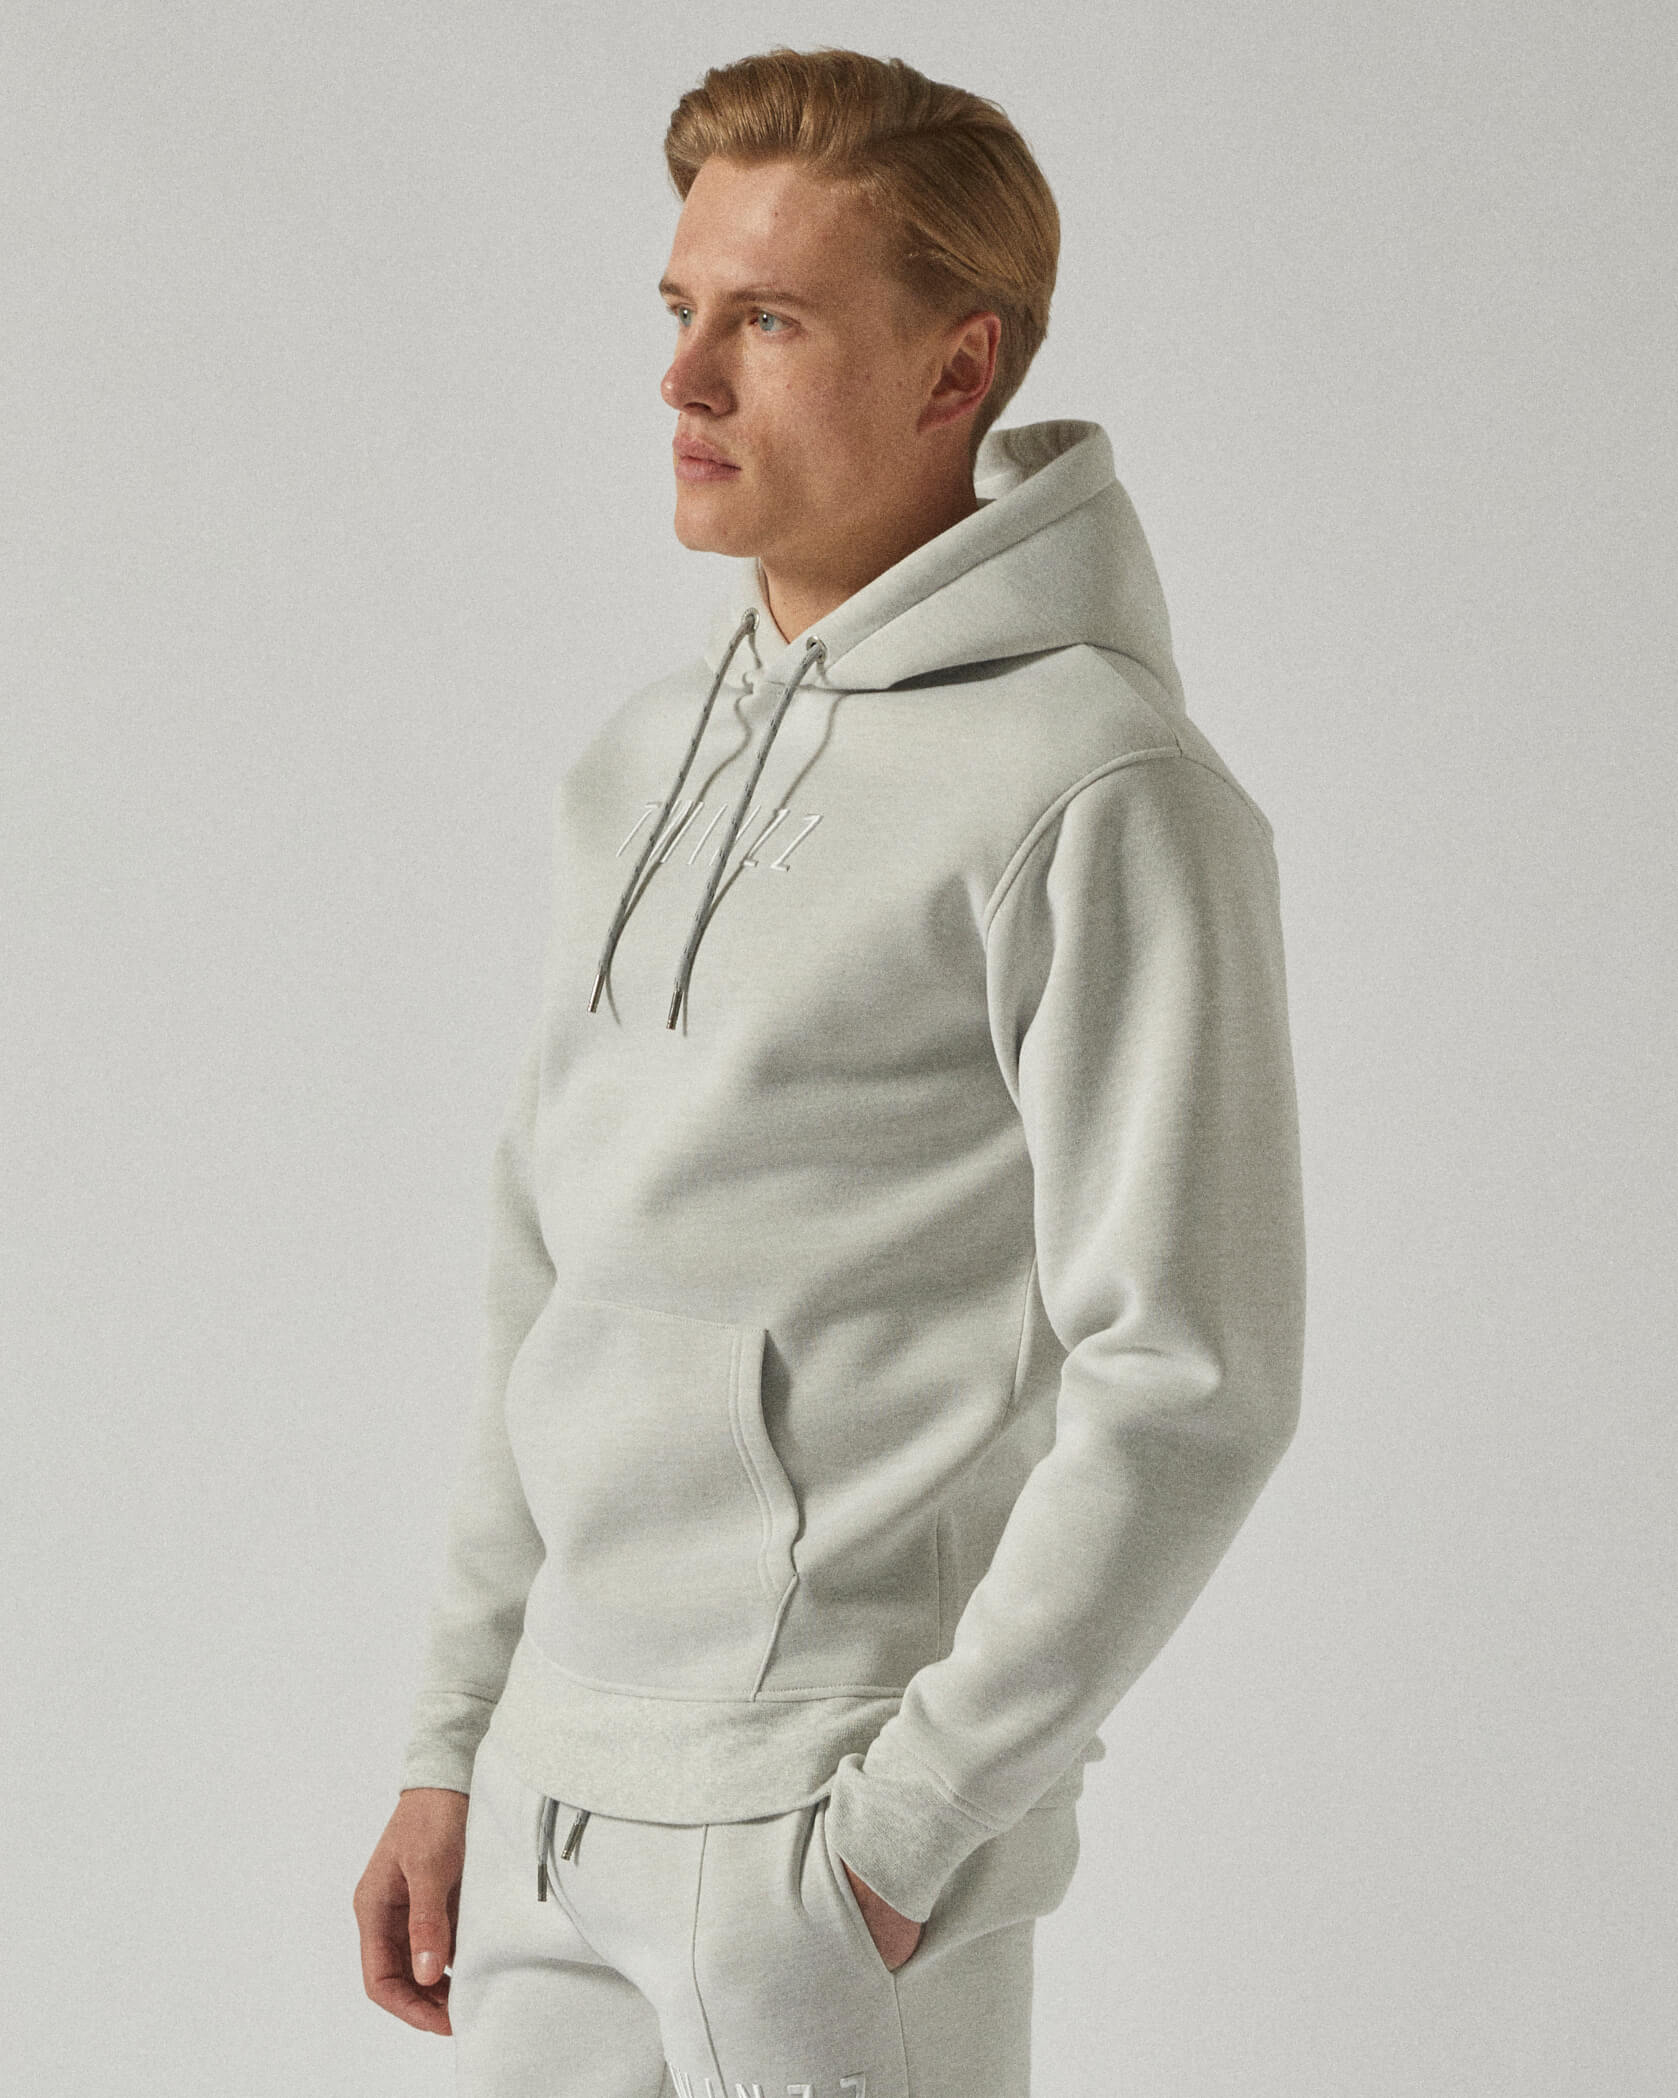 Twinzz grey hoodie on model